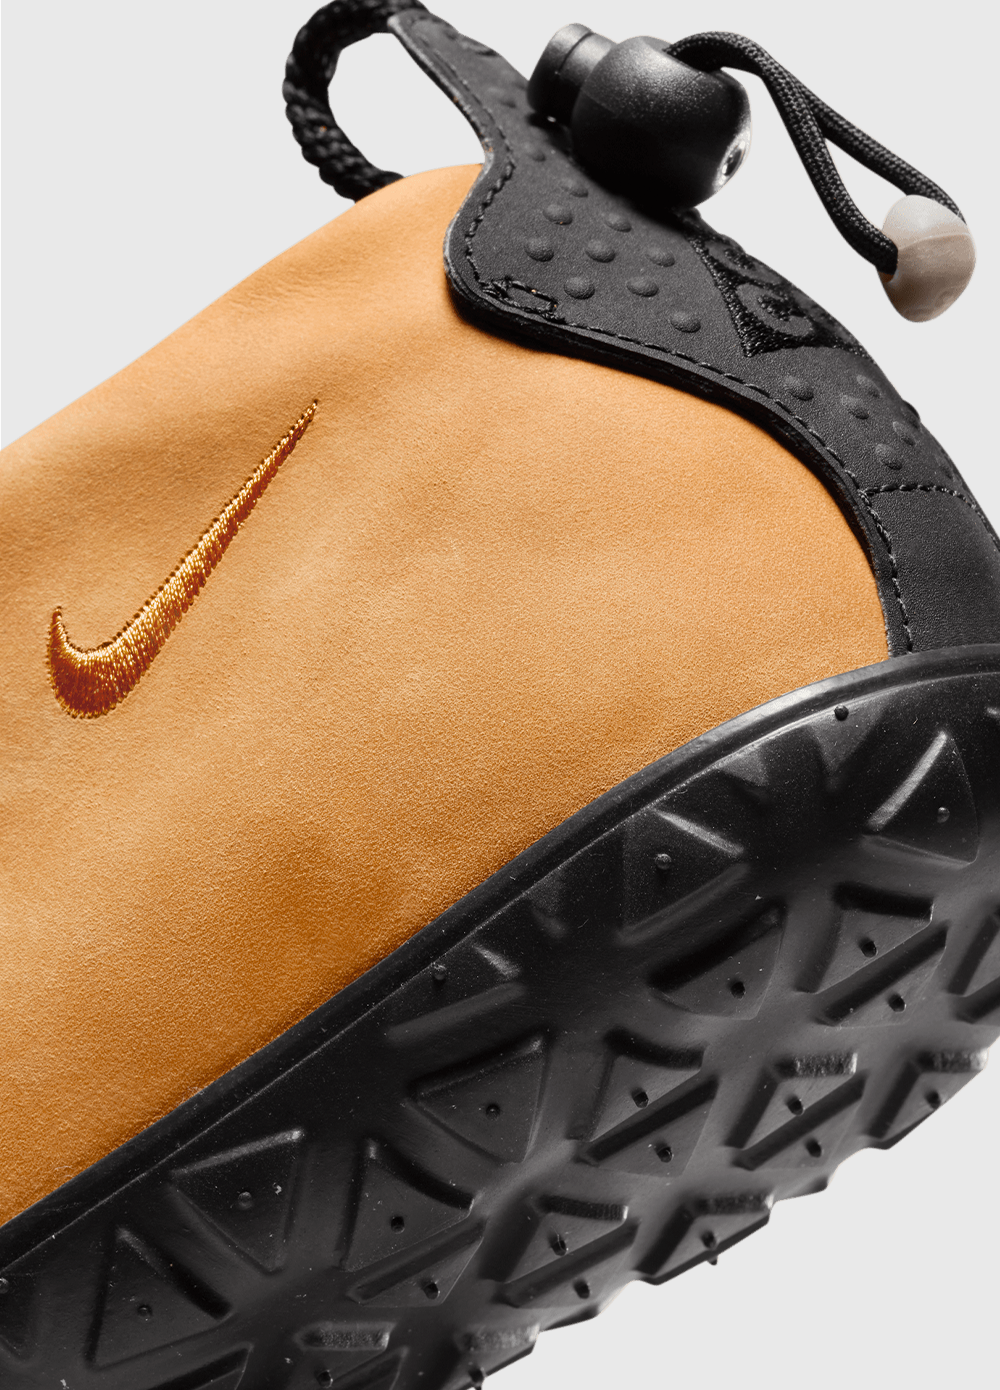 Nike ACG Moc Premium 'Russet Sneakers